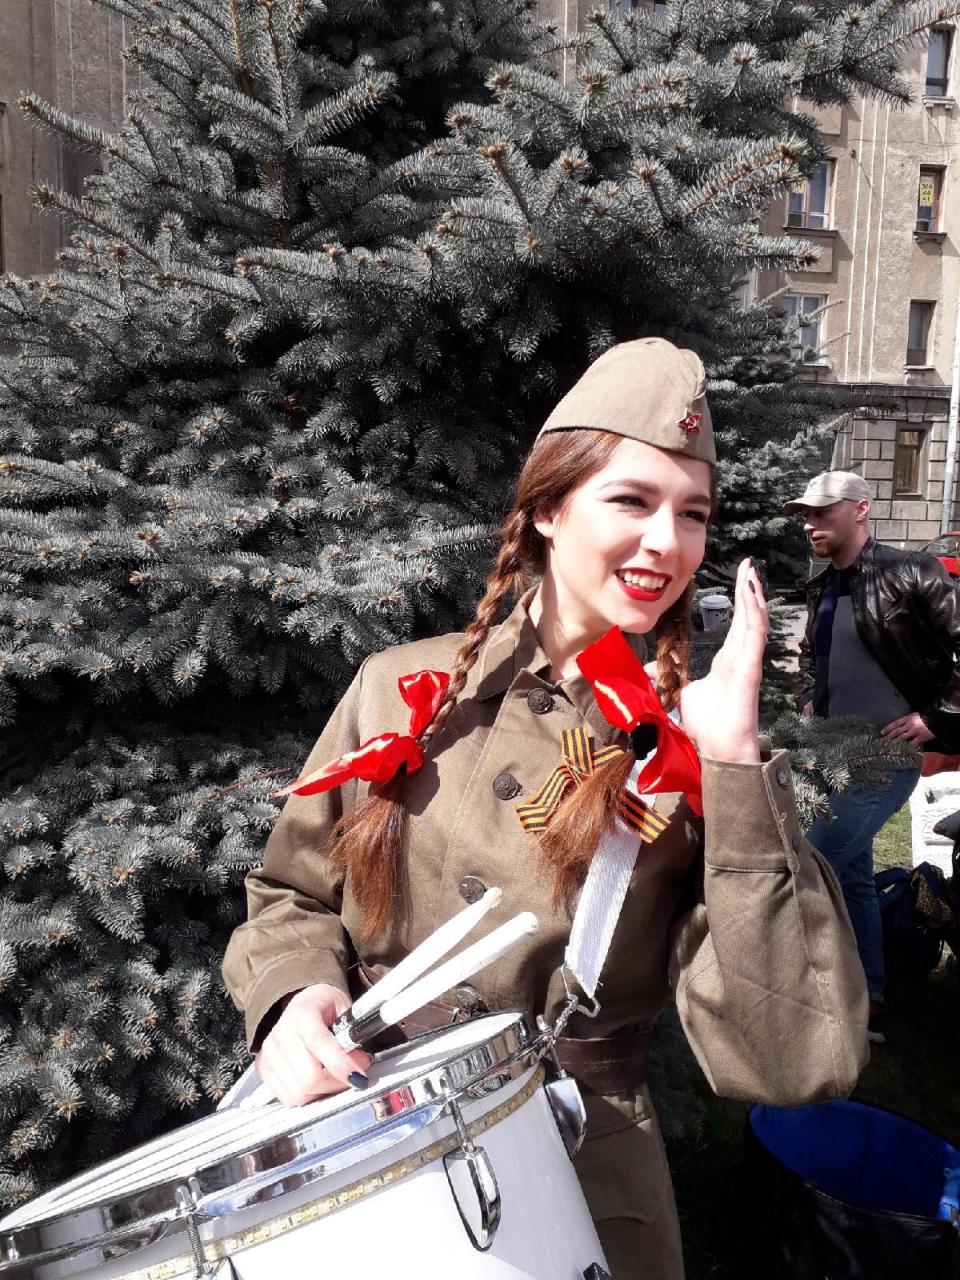 Русские красавицы-барабанщицы признались в любви к Баку